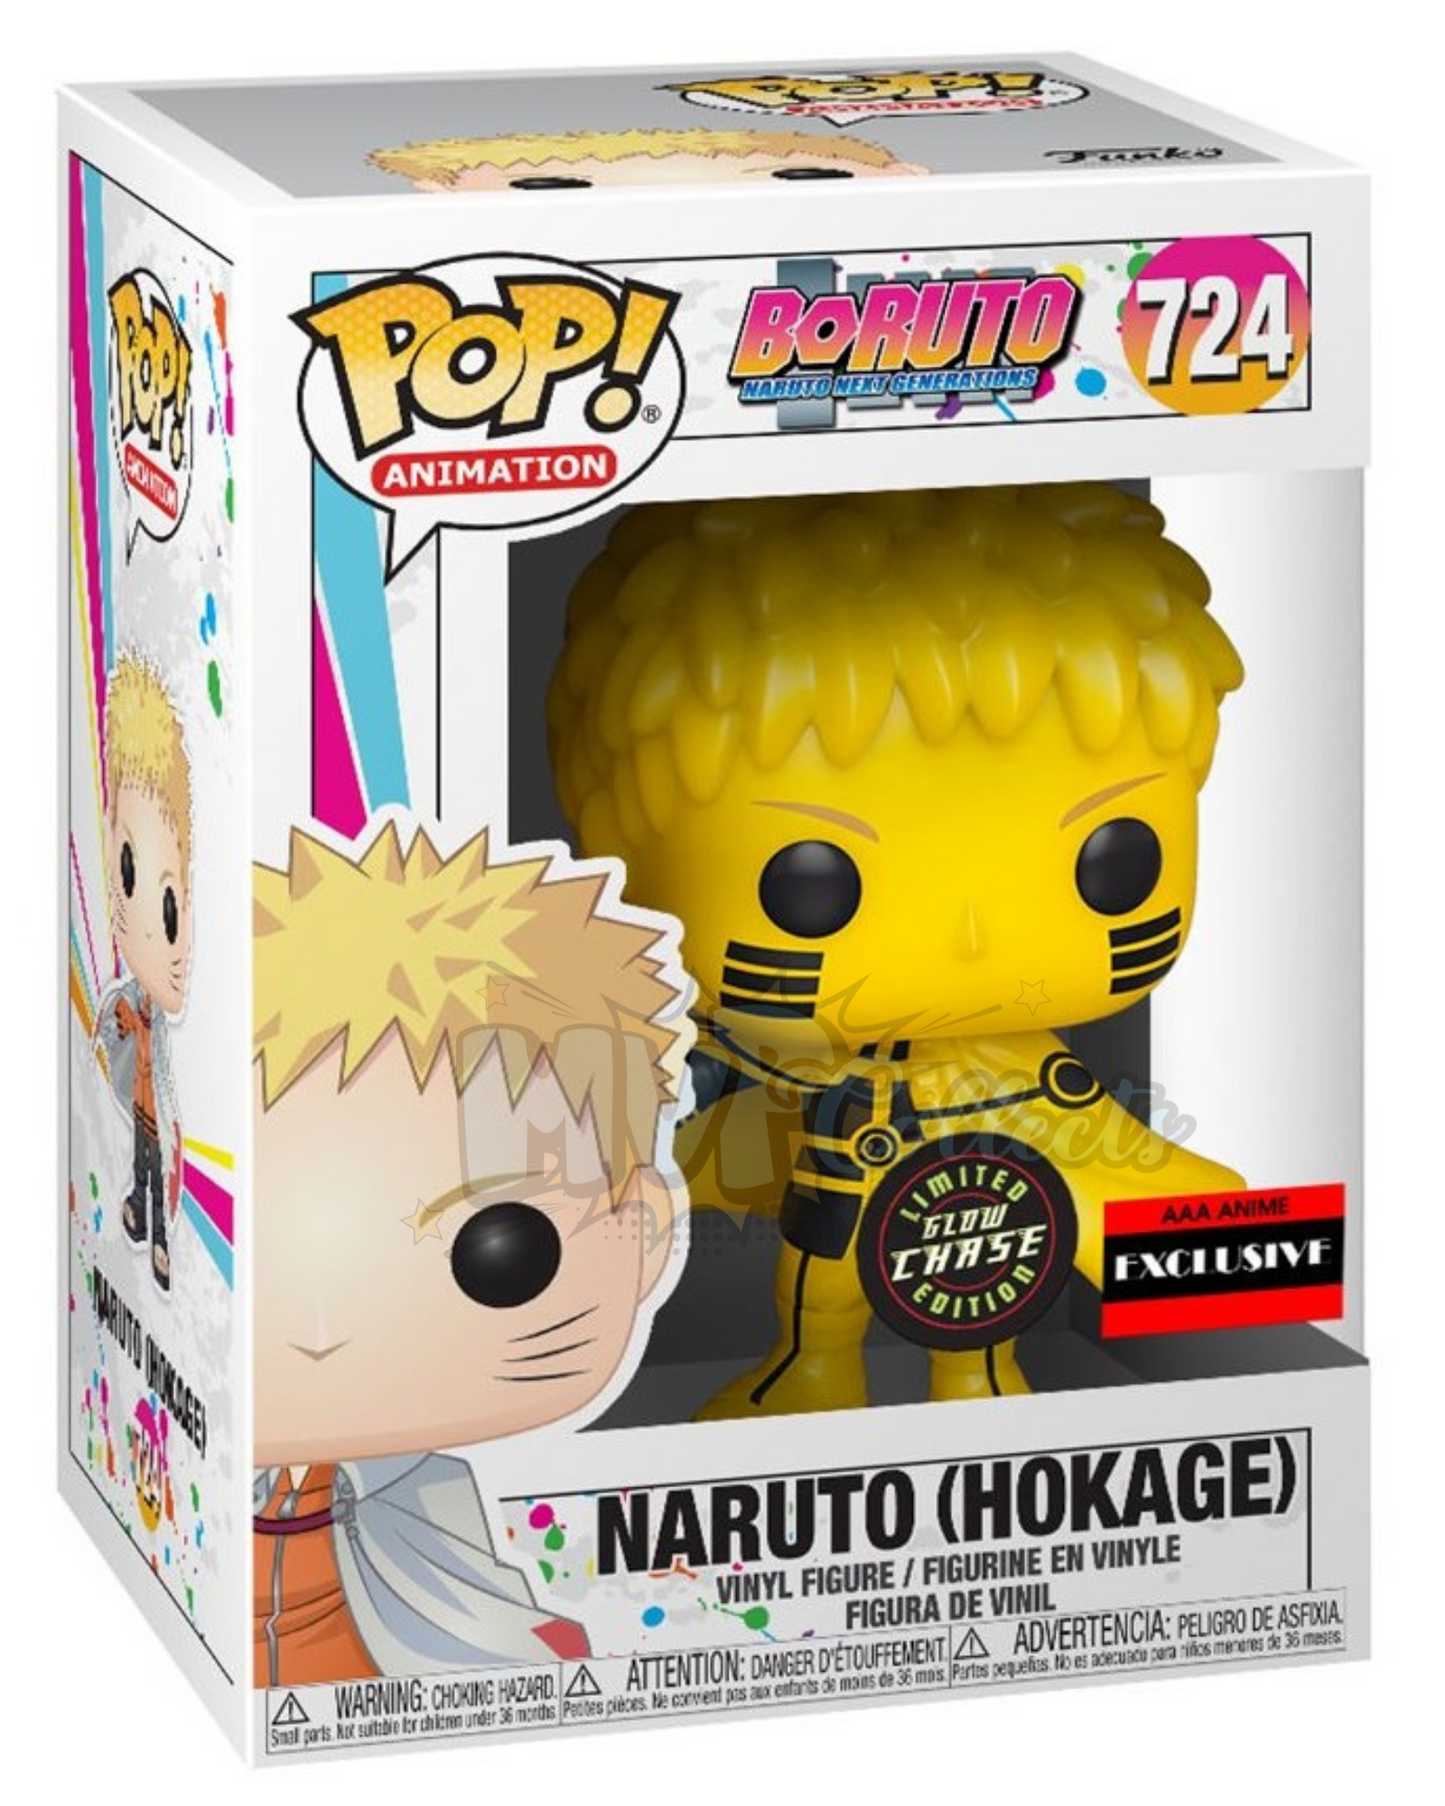 Naruto (Hokage) POP! Chase AAA Exclusive 724